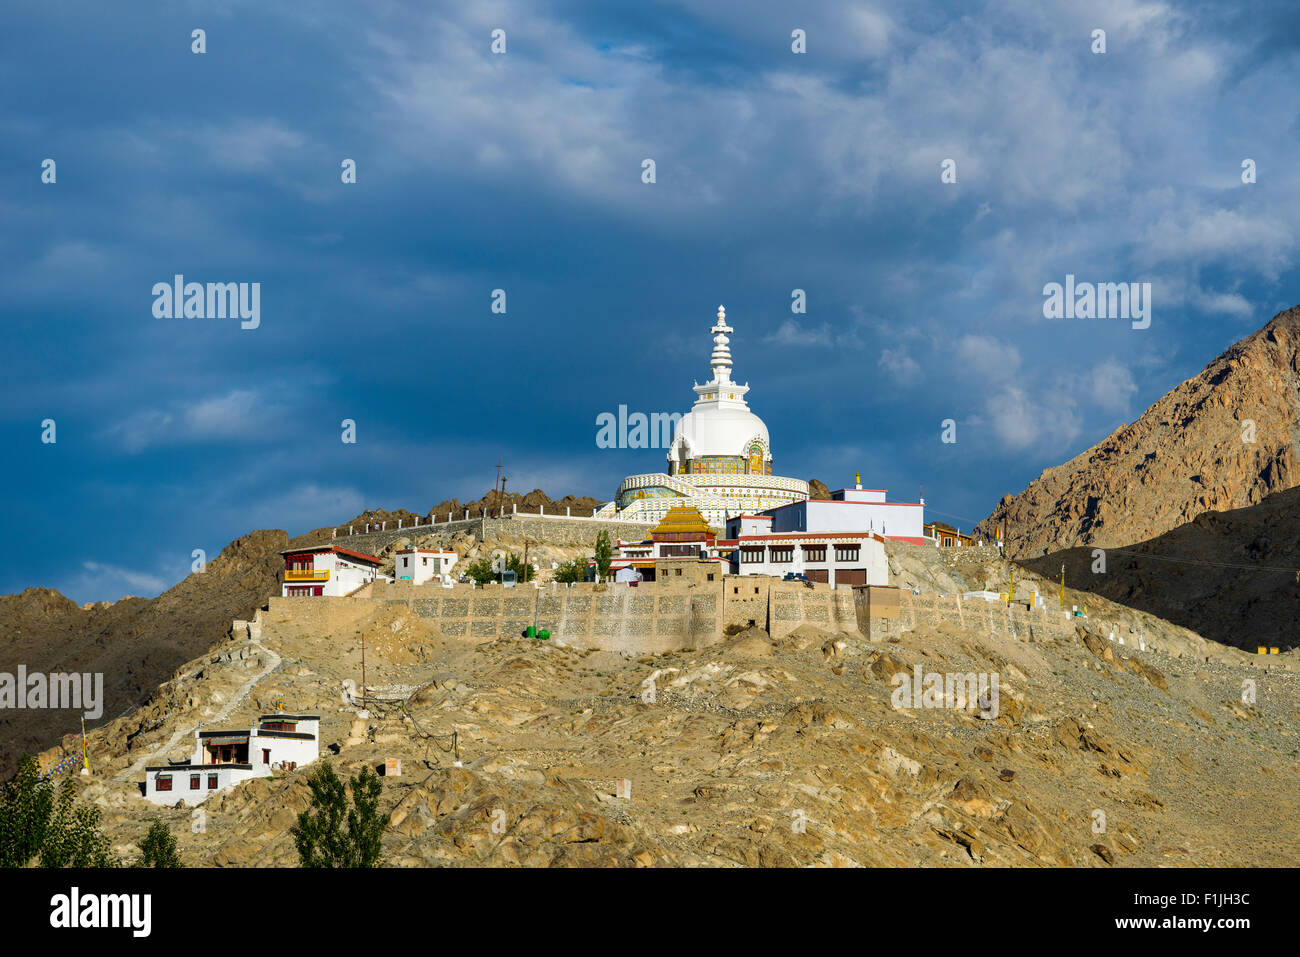 Stupa japonais, érigée en 1991, sur une crête de montagne au-dessus du village Changspa, Leh, Jammu-et-Cachemire, l'Inde Banque D'Images